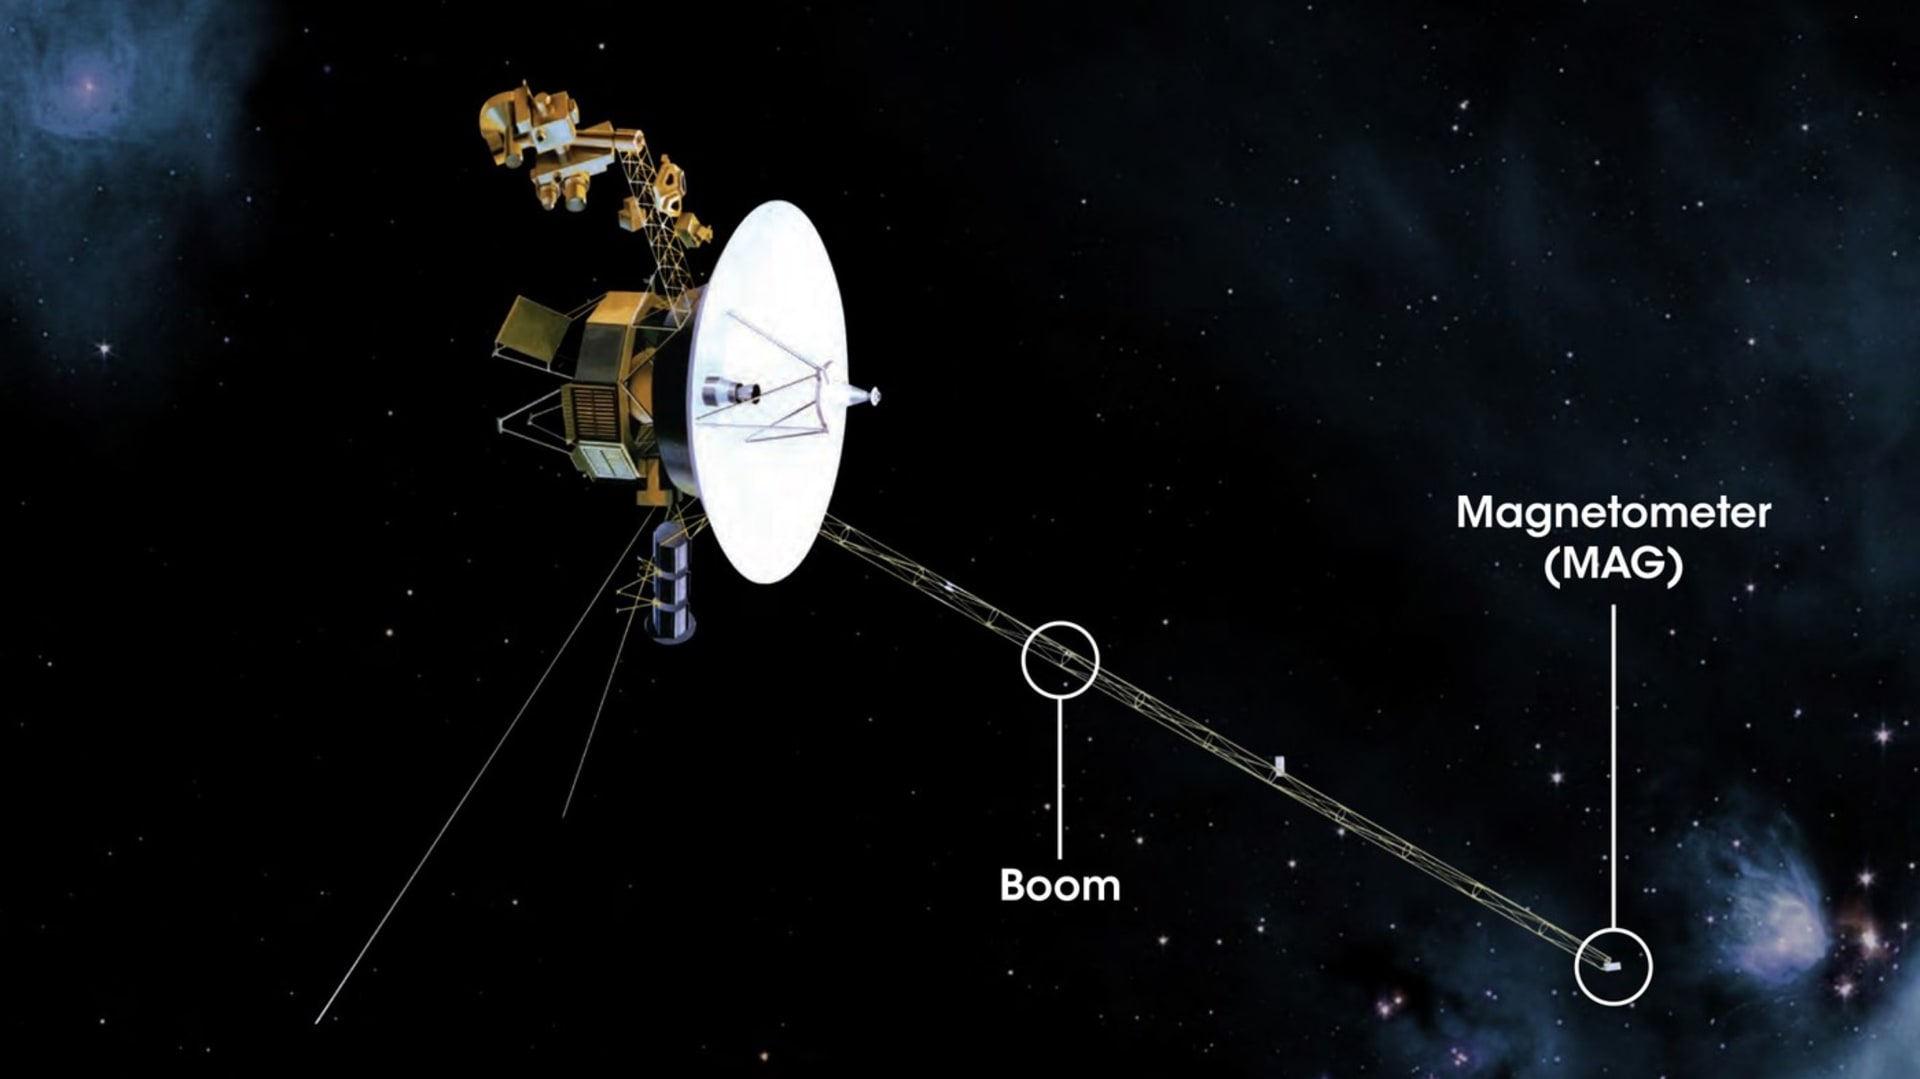 Sonda Voyager 1 je nevzdálenějším lidským objektem ve vesmíru. Spolu se sondou Voyager 2 byla vyslána v roce 1977, původně měly obě prozkoumat čtyři plynné obry naší Sluneční soustavy - Jupiter Saturn, Uran a Neptun. Podařilo se jim ale pokračovat ještě dál a nyní jsou za vnější hranicí heliosféry v mezihvězdném prostoru.